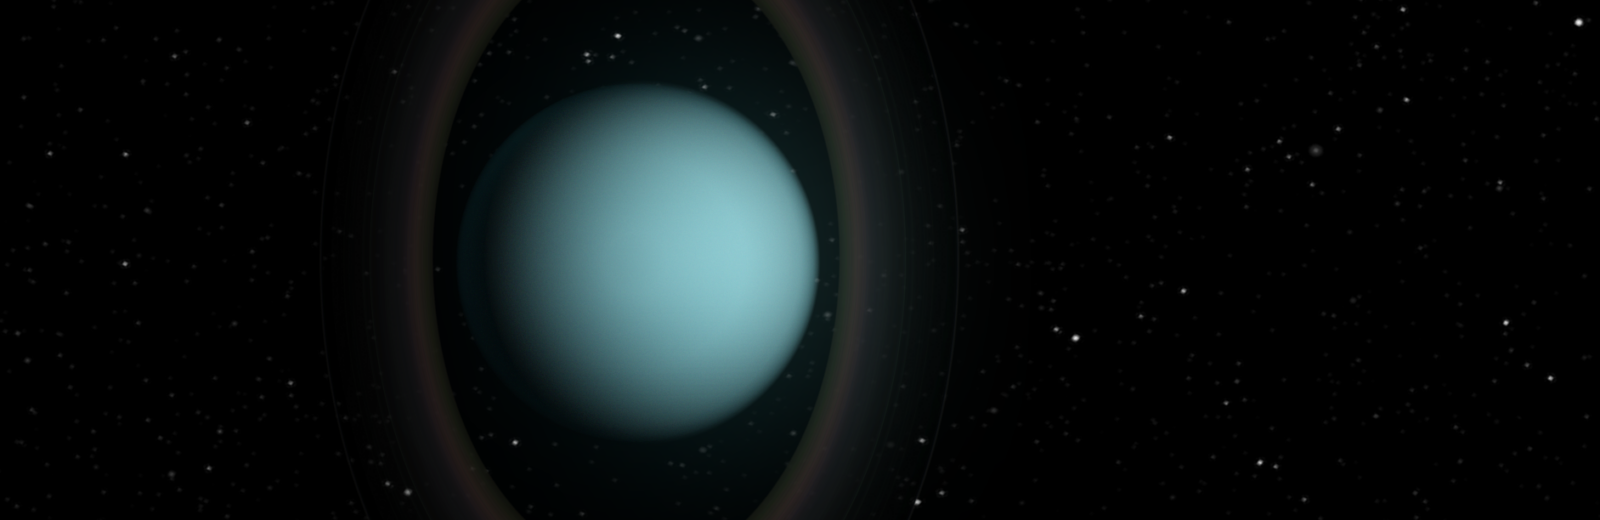 靠「夜視力」幫天王星環量溫度